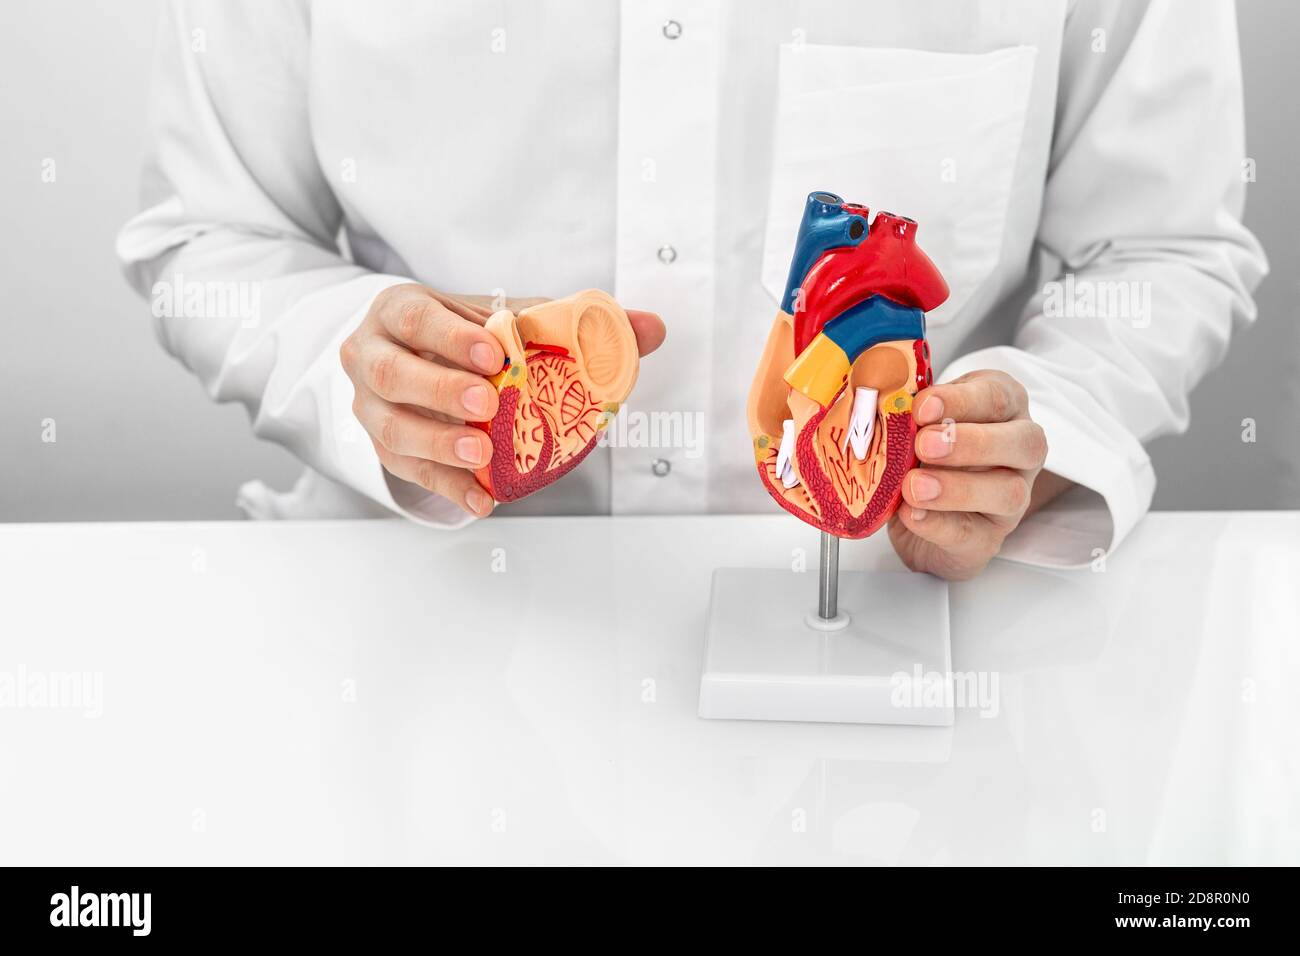 Konzept des Berufs Kardiologe, World Heart Day. Kardiologe trägt einen medizinischen Mantel, der ein anatomisches Herzmodell und eine Herzphysiologie zeigt Stockfoto